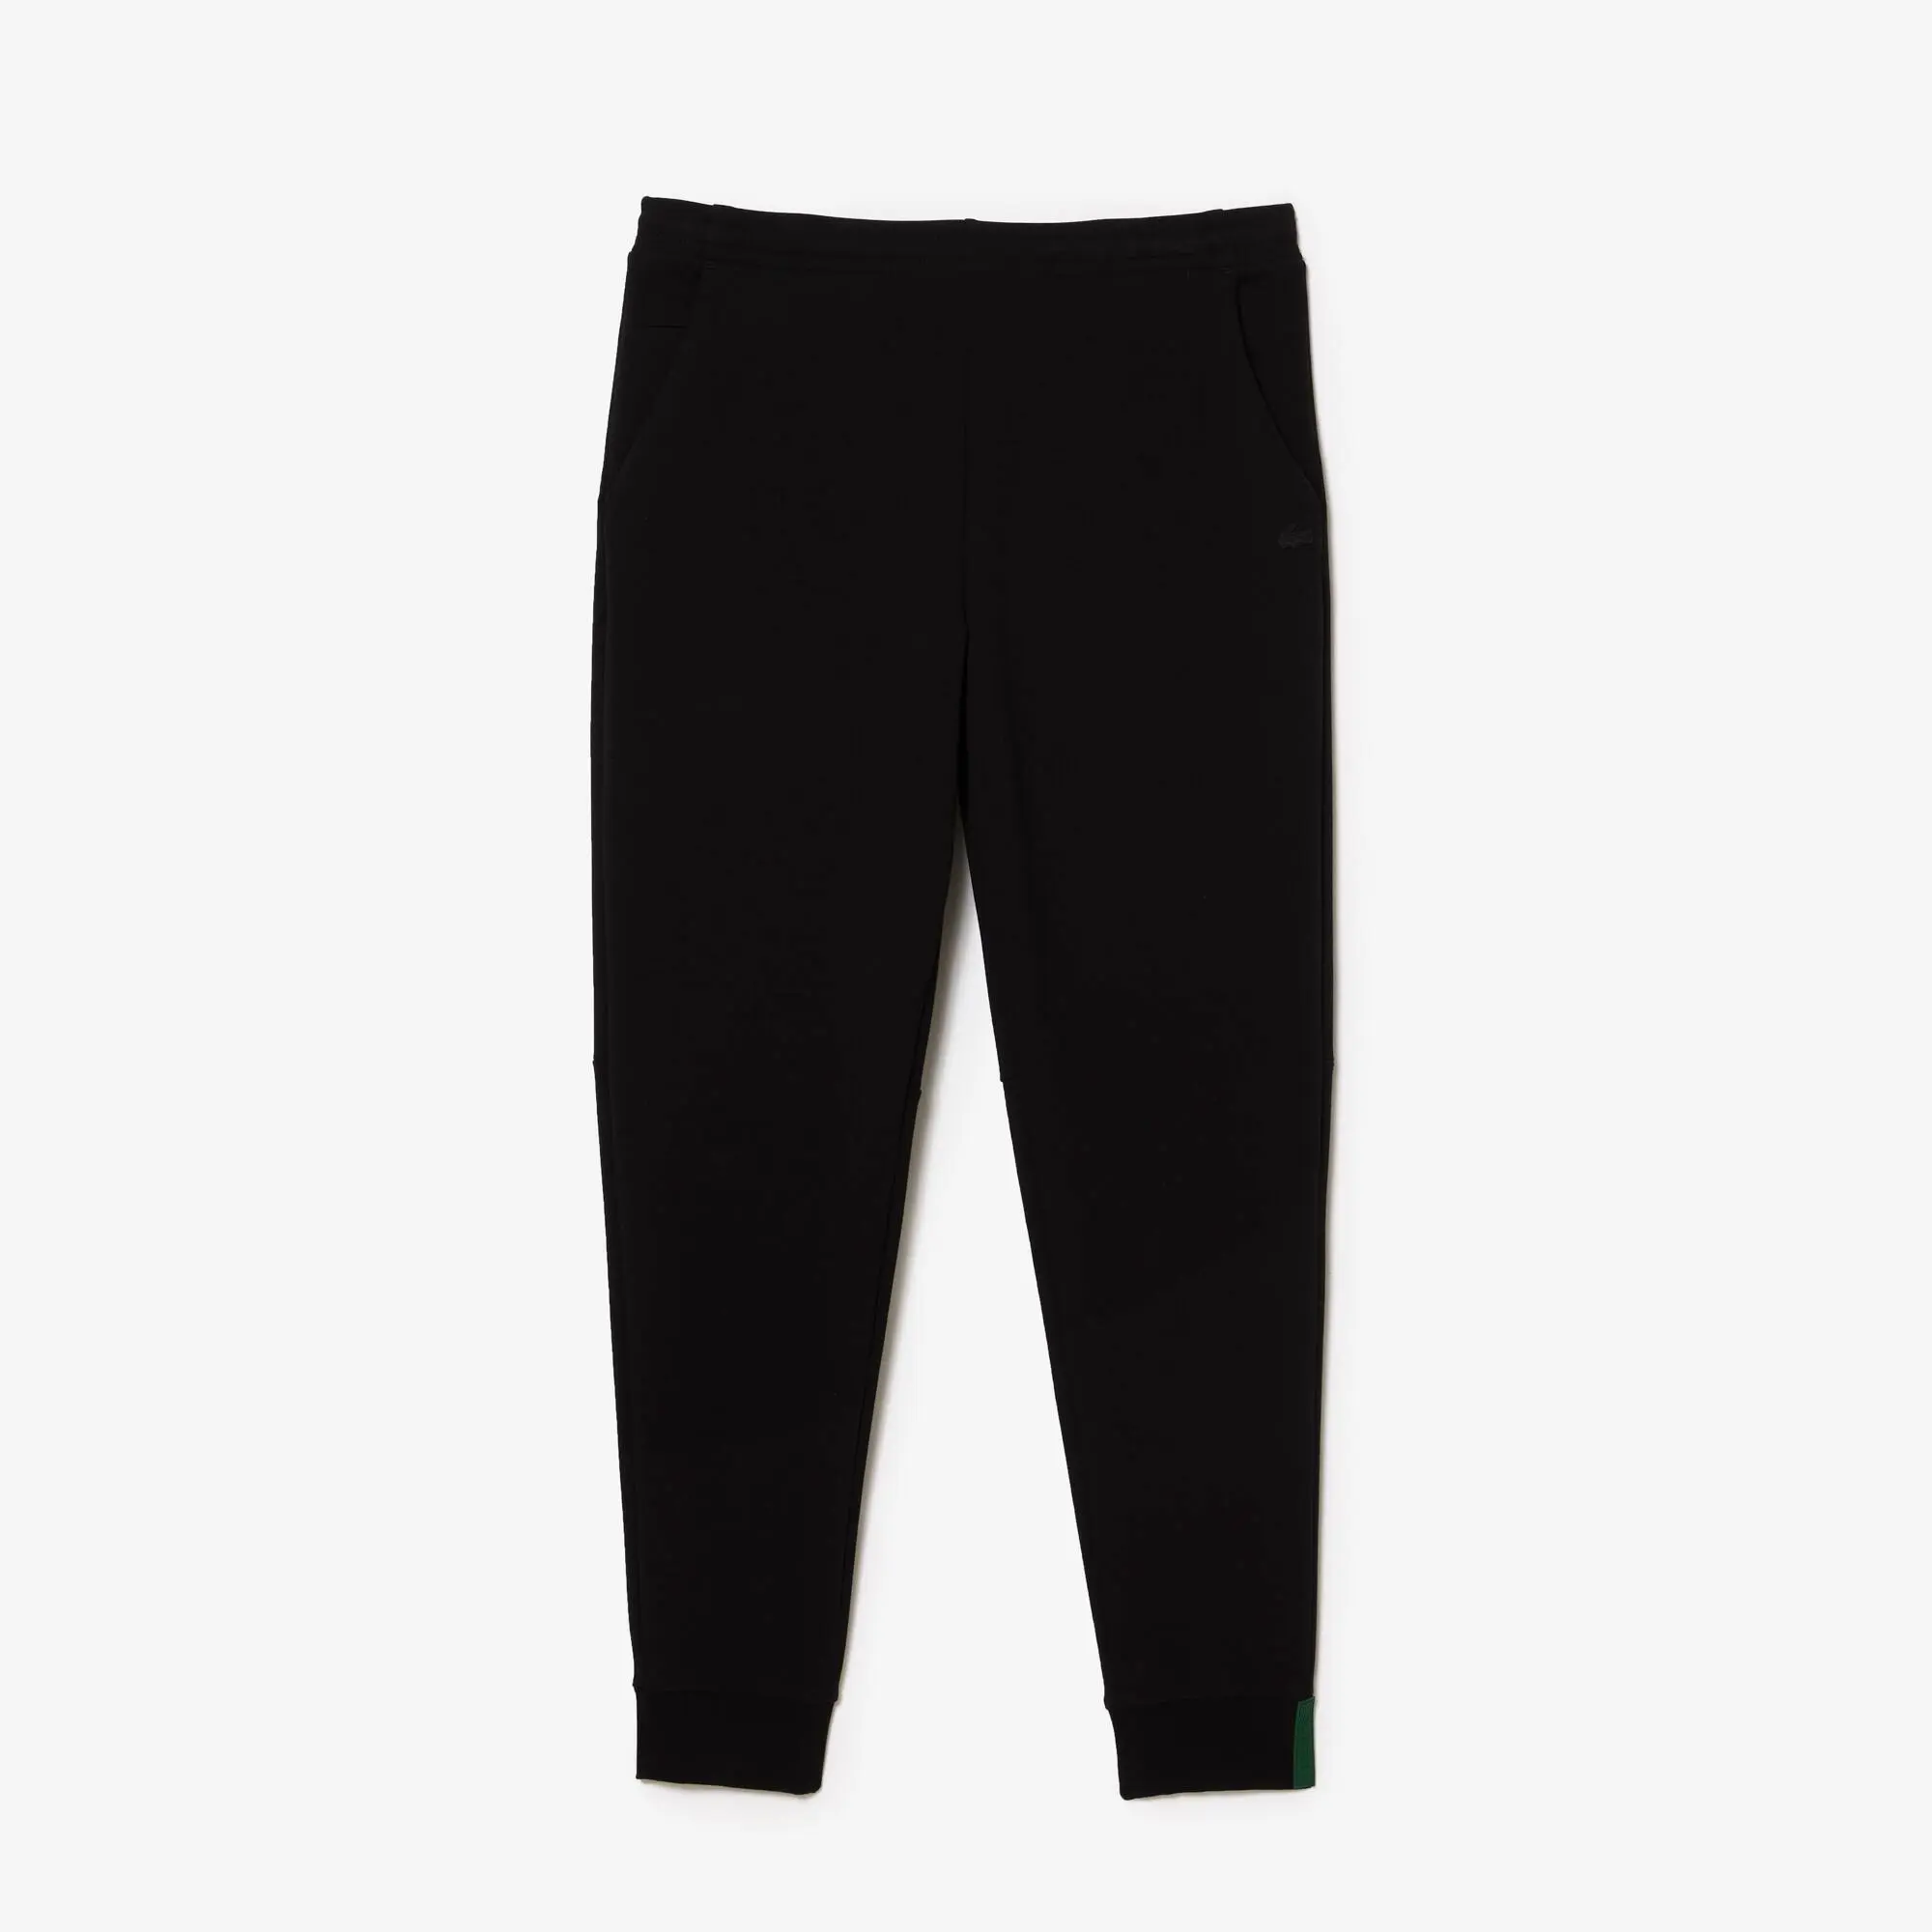 Lacoste Pantalon de jogging Jogger slim fit en coton mélangé chiné. 2